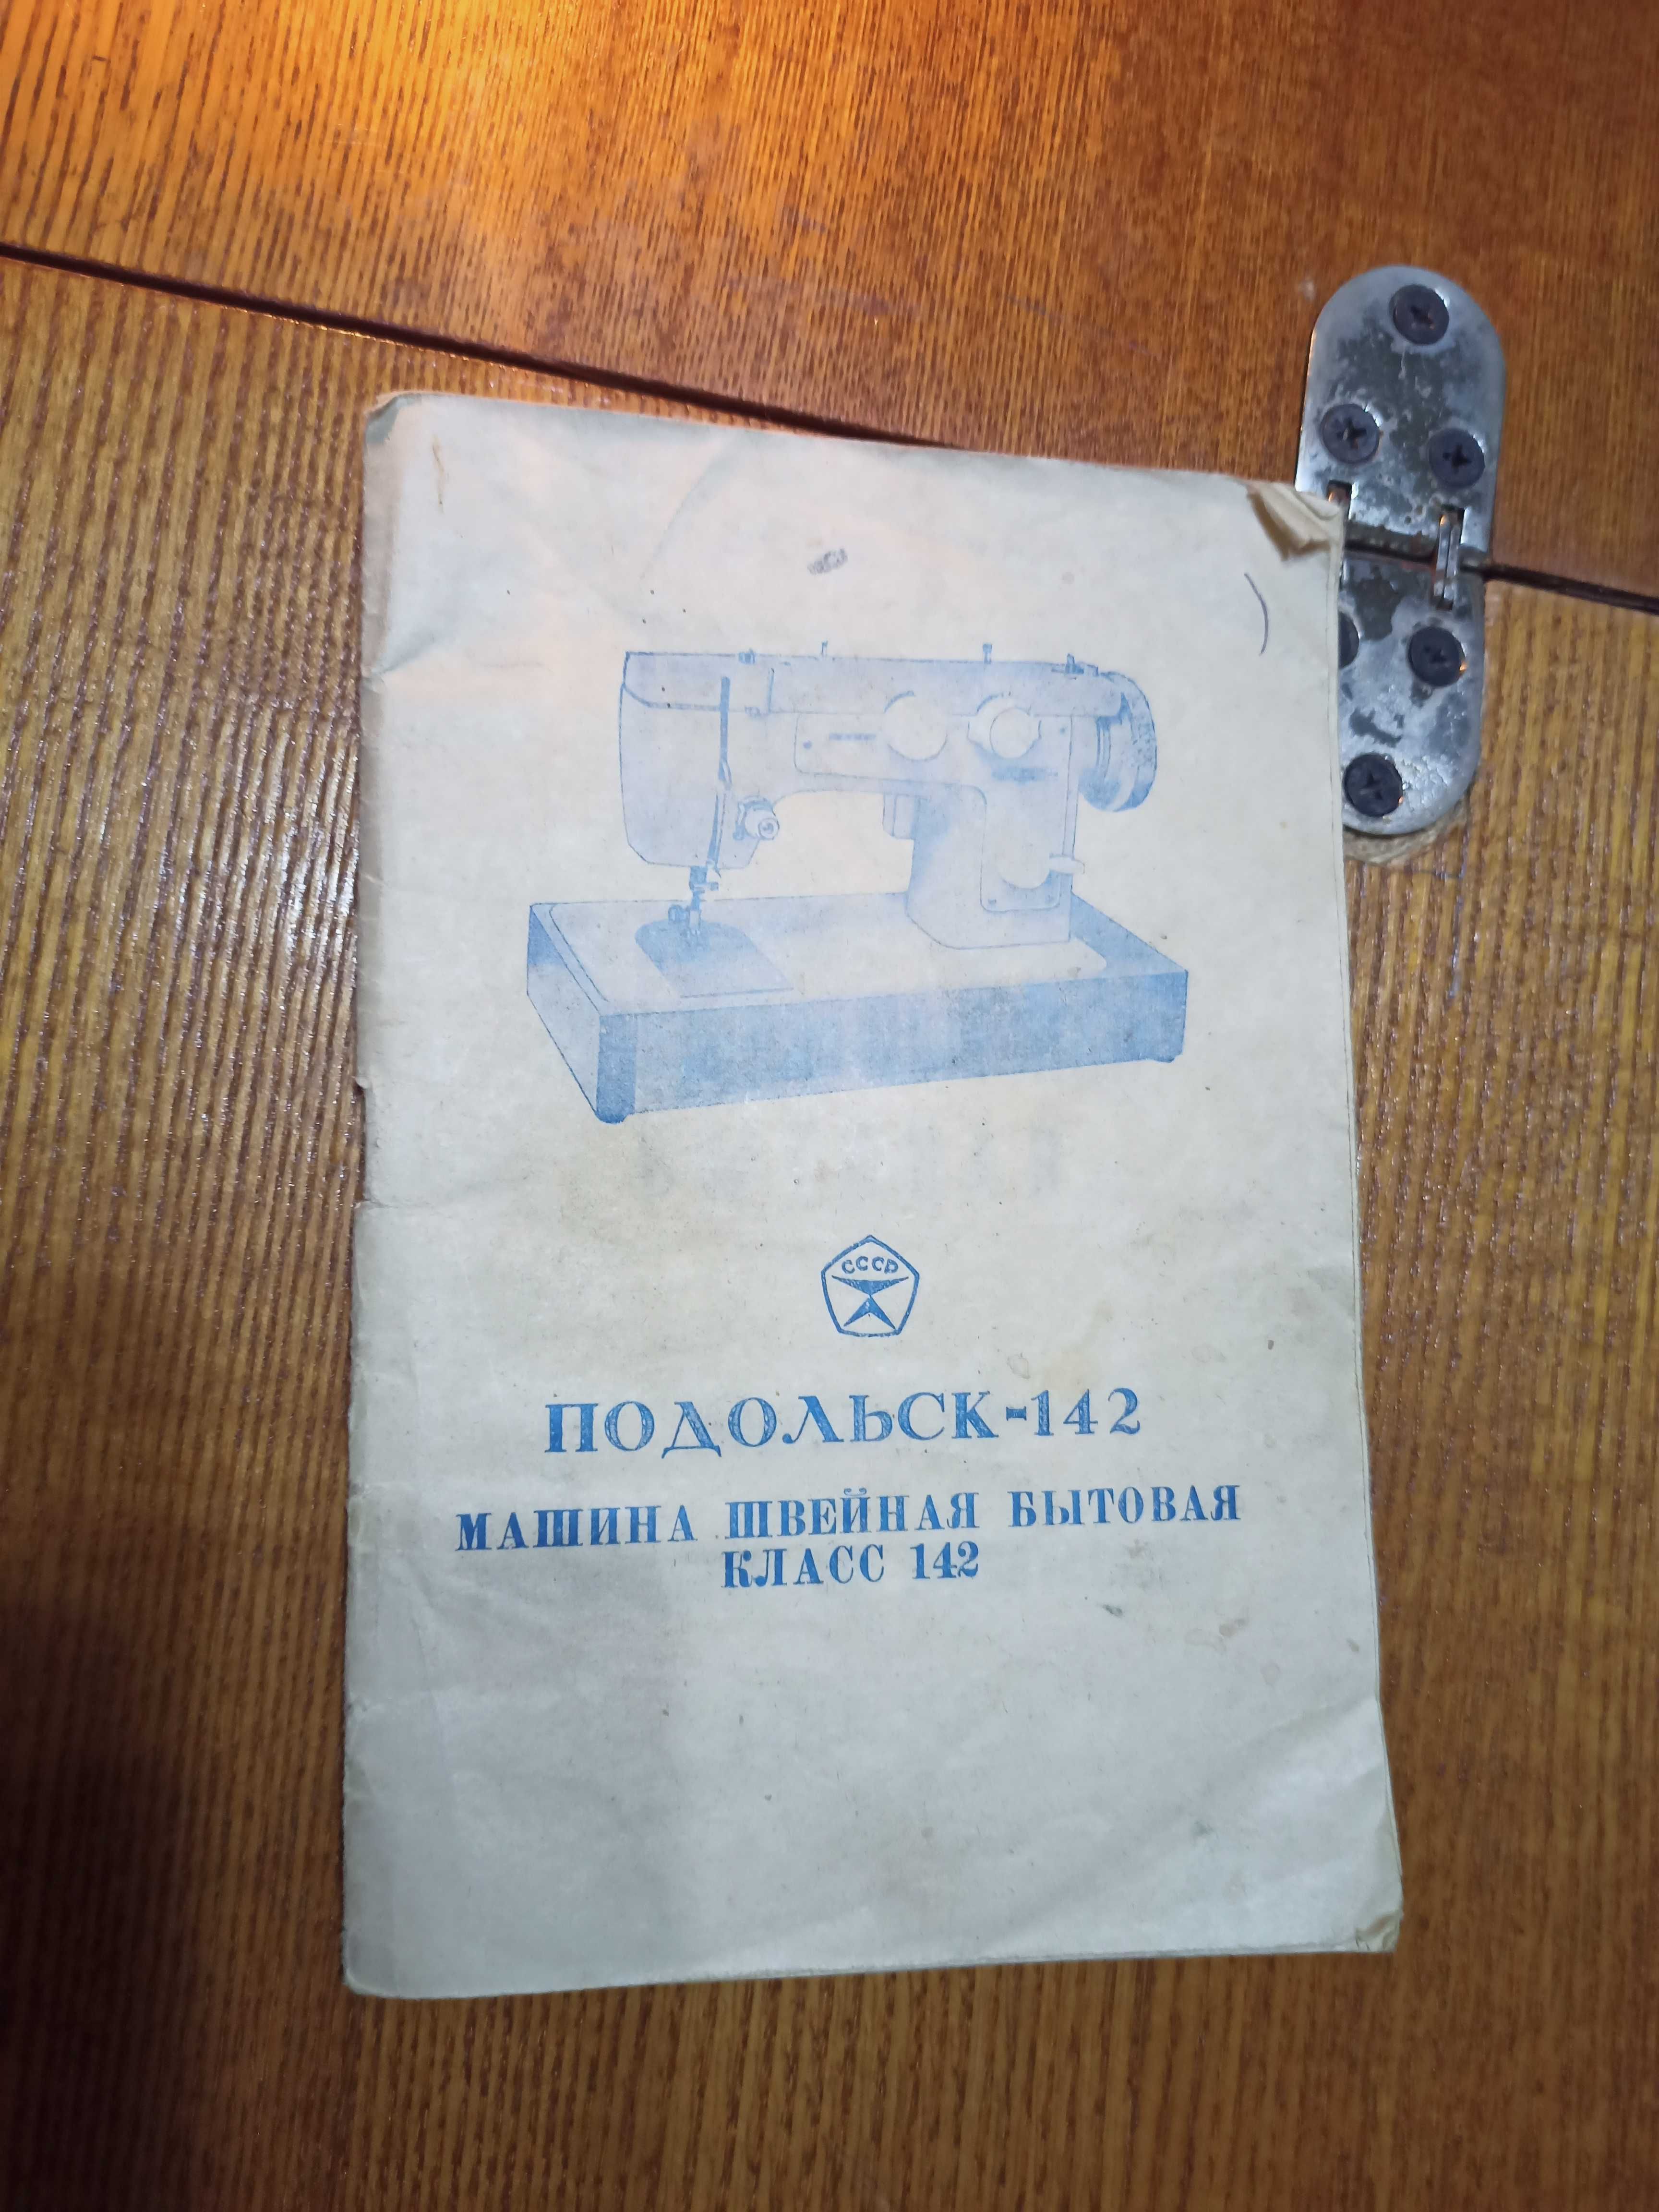 Швейная машинка Подольск-142 в отличном состоянии, пользовались мало